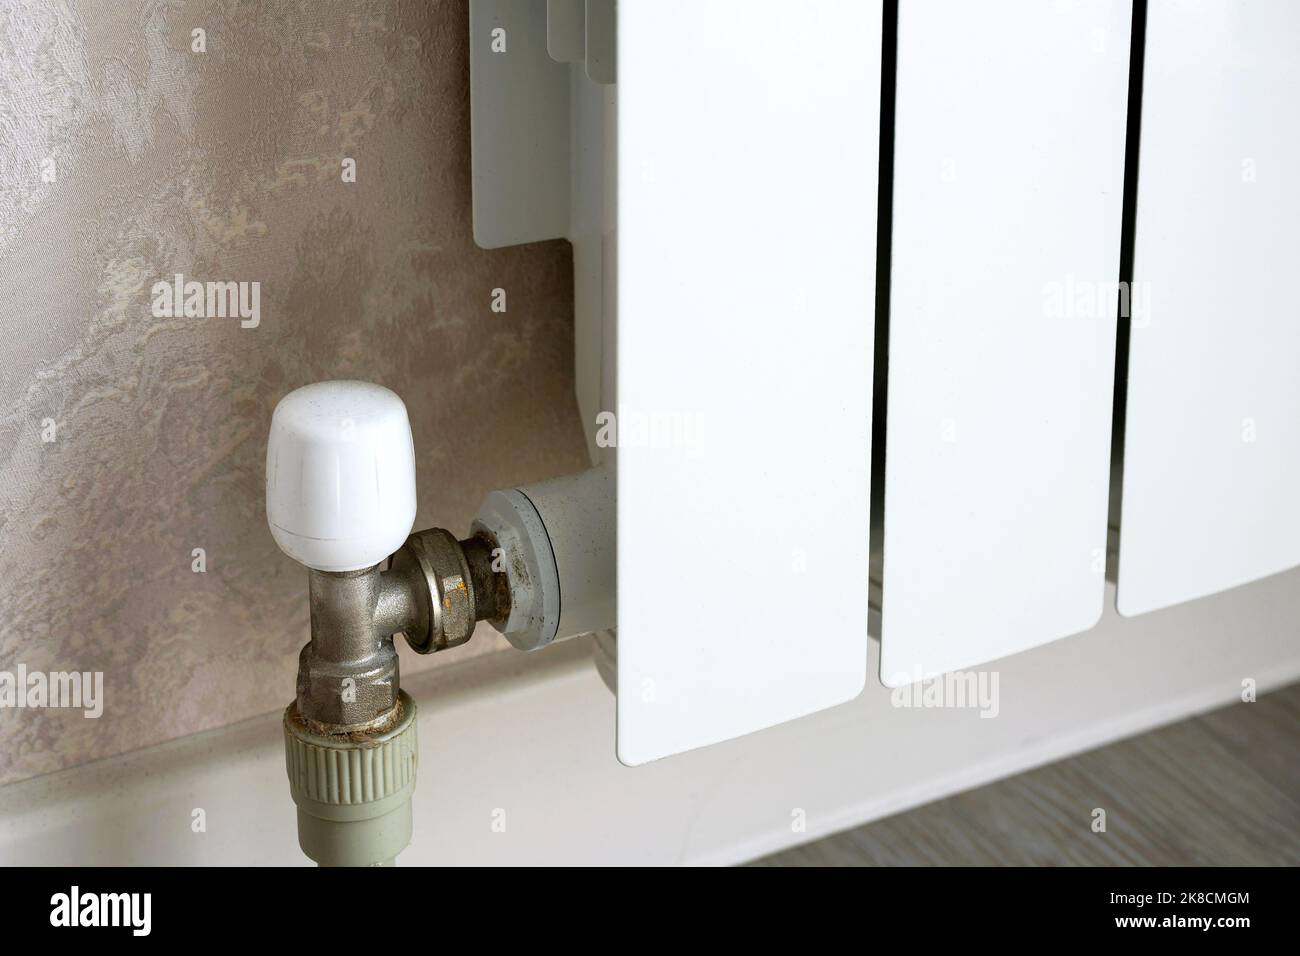 Heizkörper mit Thermostat an der Hauswand, weißer Metallwassererhitzer im Hauszimmer. Konzept von Wärme, Energiekrise, Einsparung, moderne Heizkörper Stockfoto